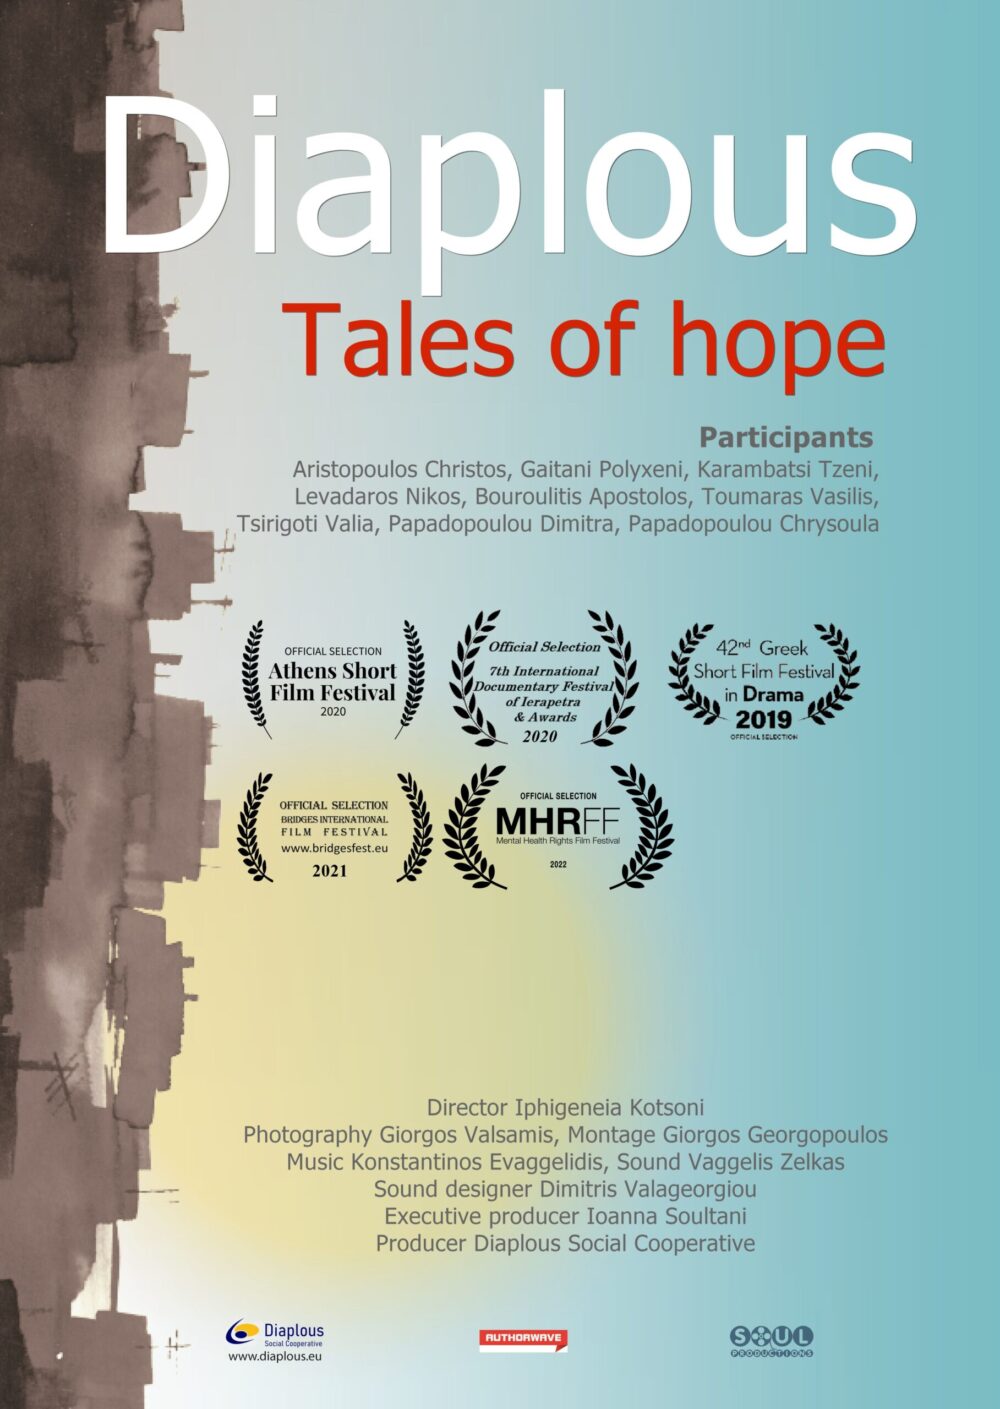 ΨΝΑ, "Ιστορίες Ελπίδας": Ντοκιμαντέρ γι΄ αυτούς που ξανακέρδισαν τη ζωή μέσα από την εργασία - Δείτε την βραβευμένη ταινία 3